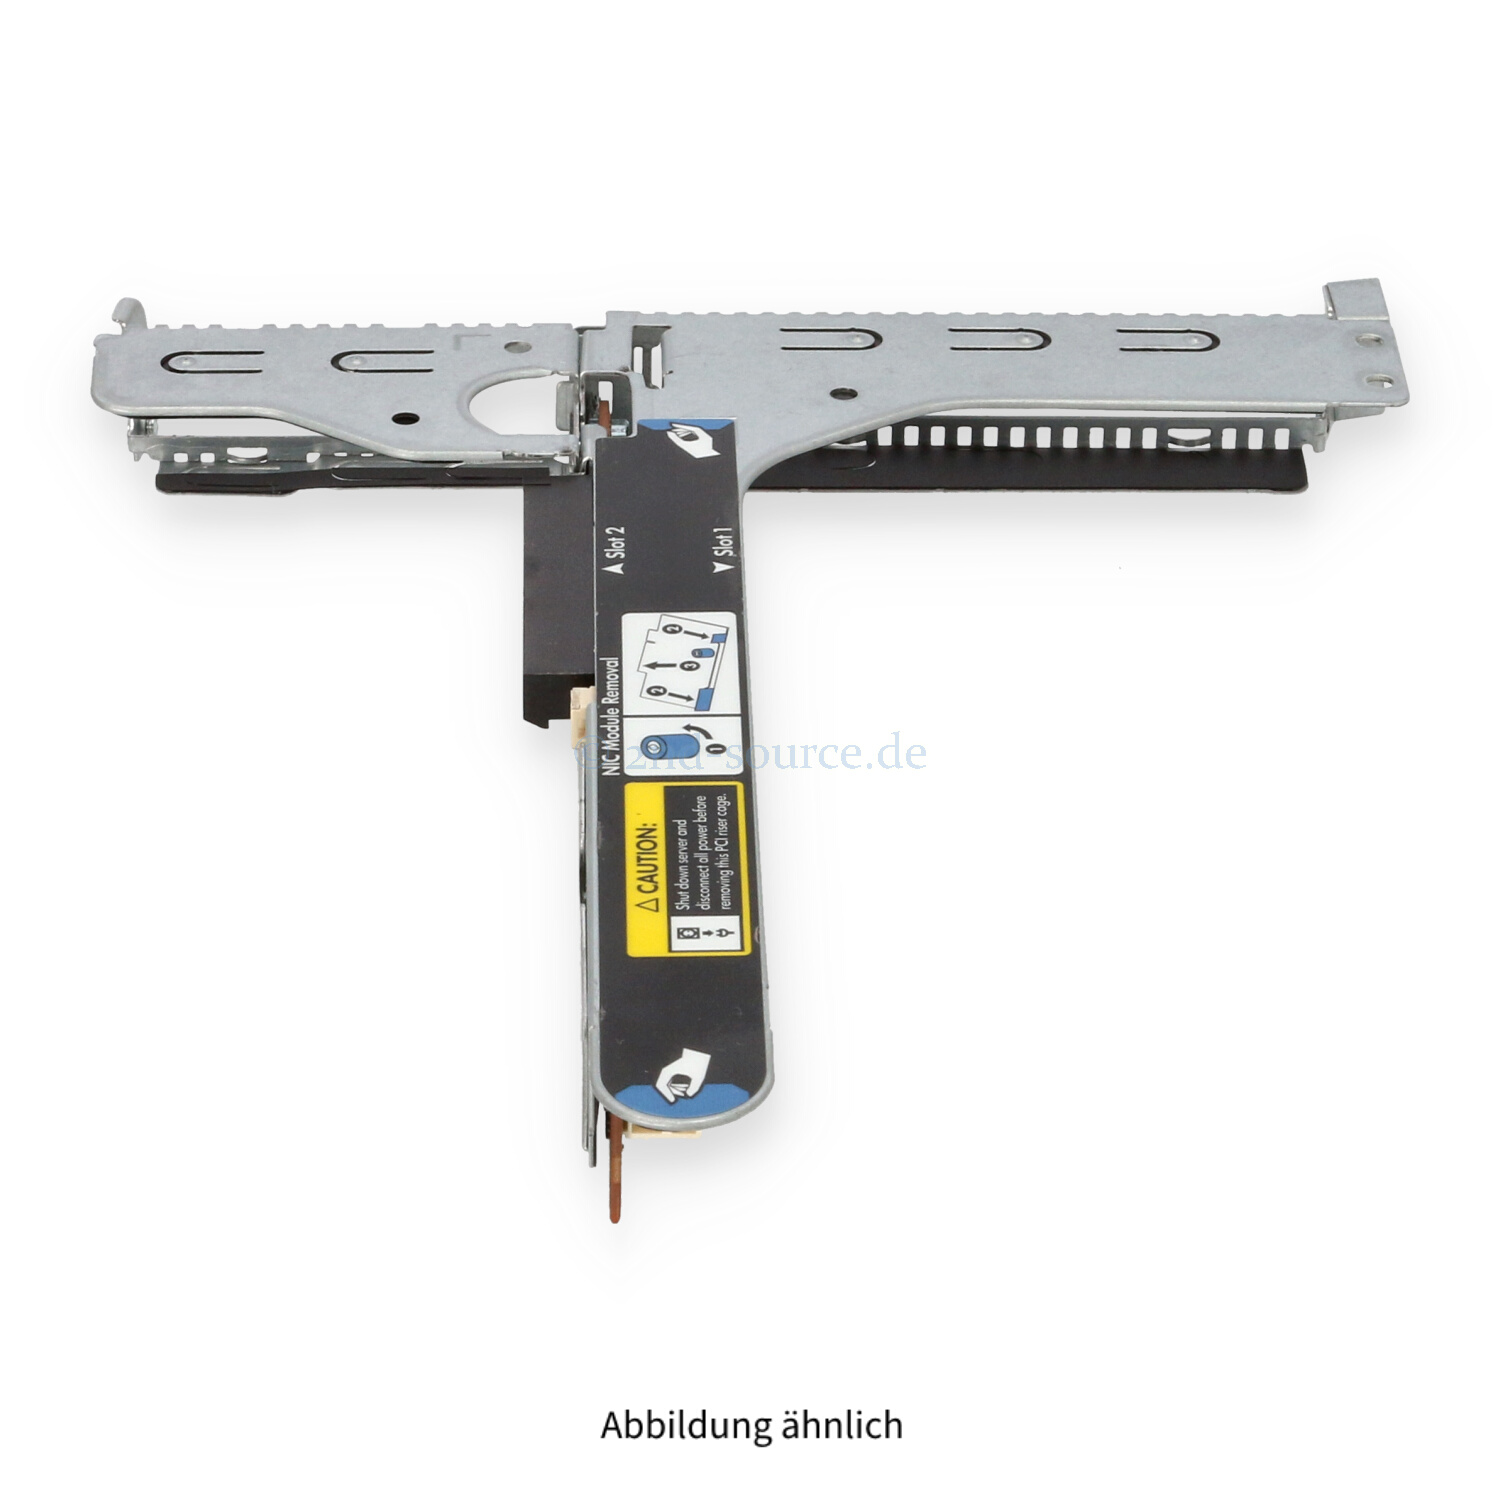 HPE 2-Slot PCI Riser Kit DL360/DL380 G9 775421-001 750685-001